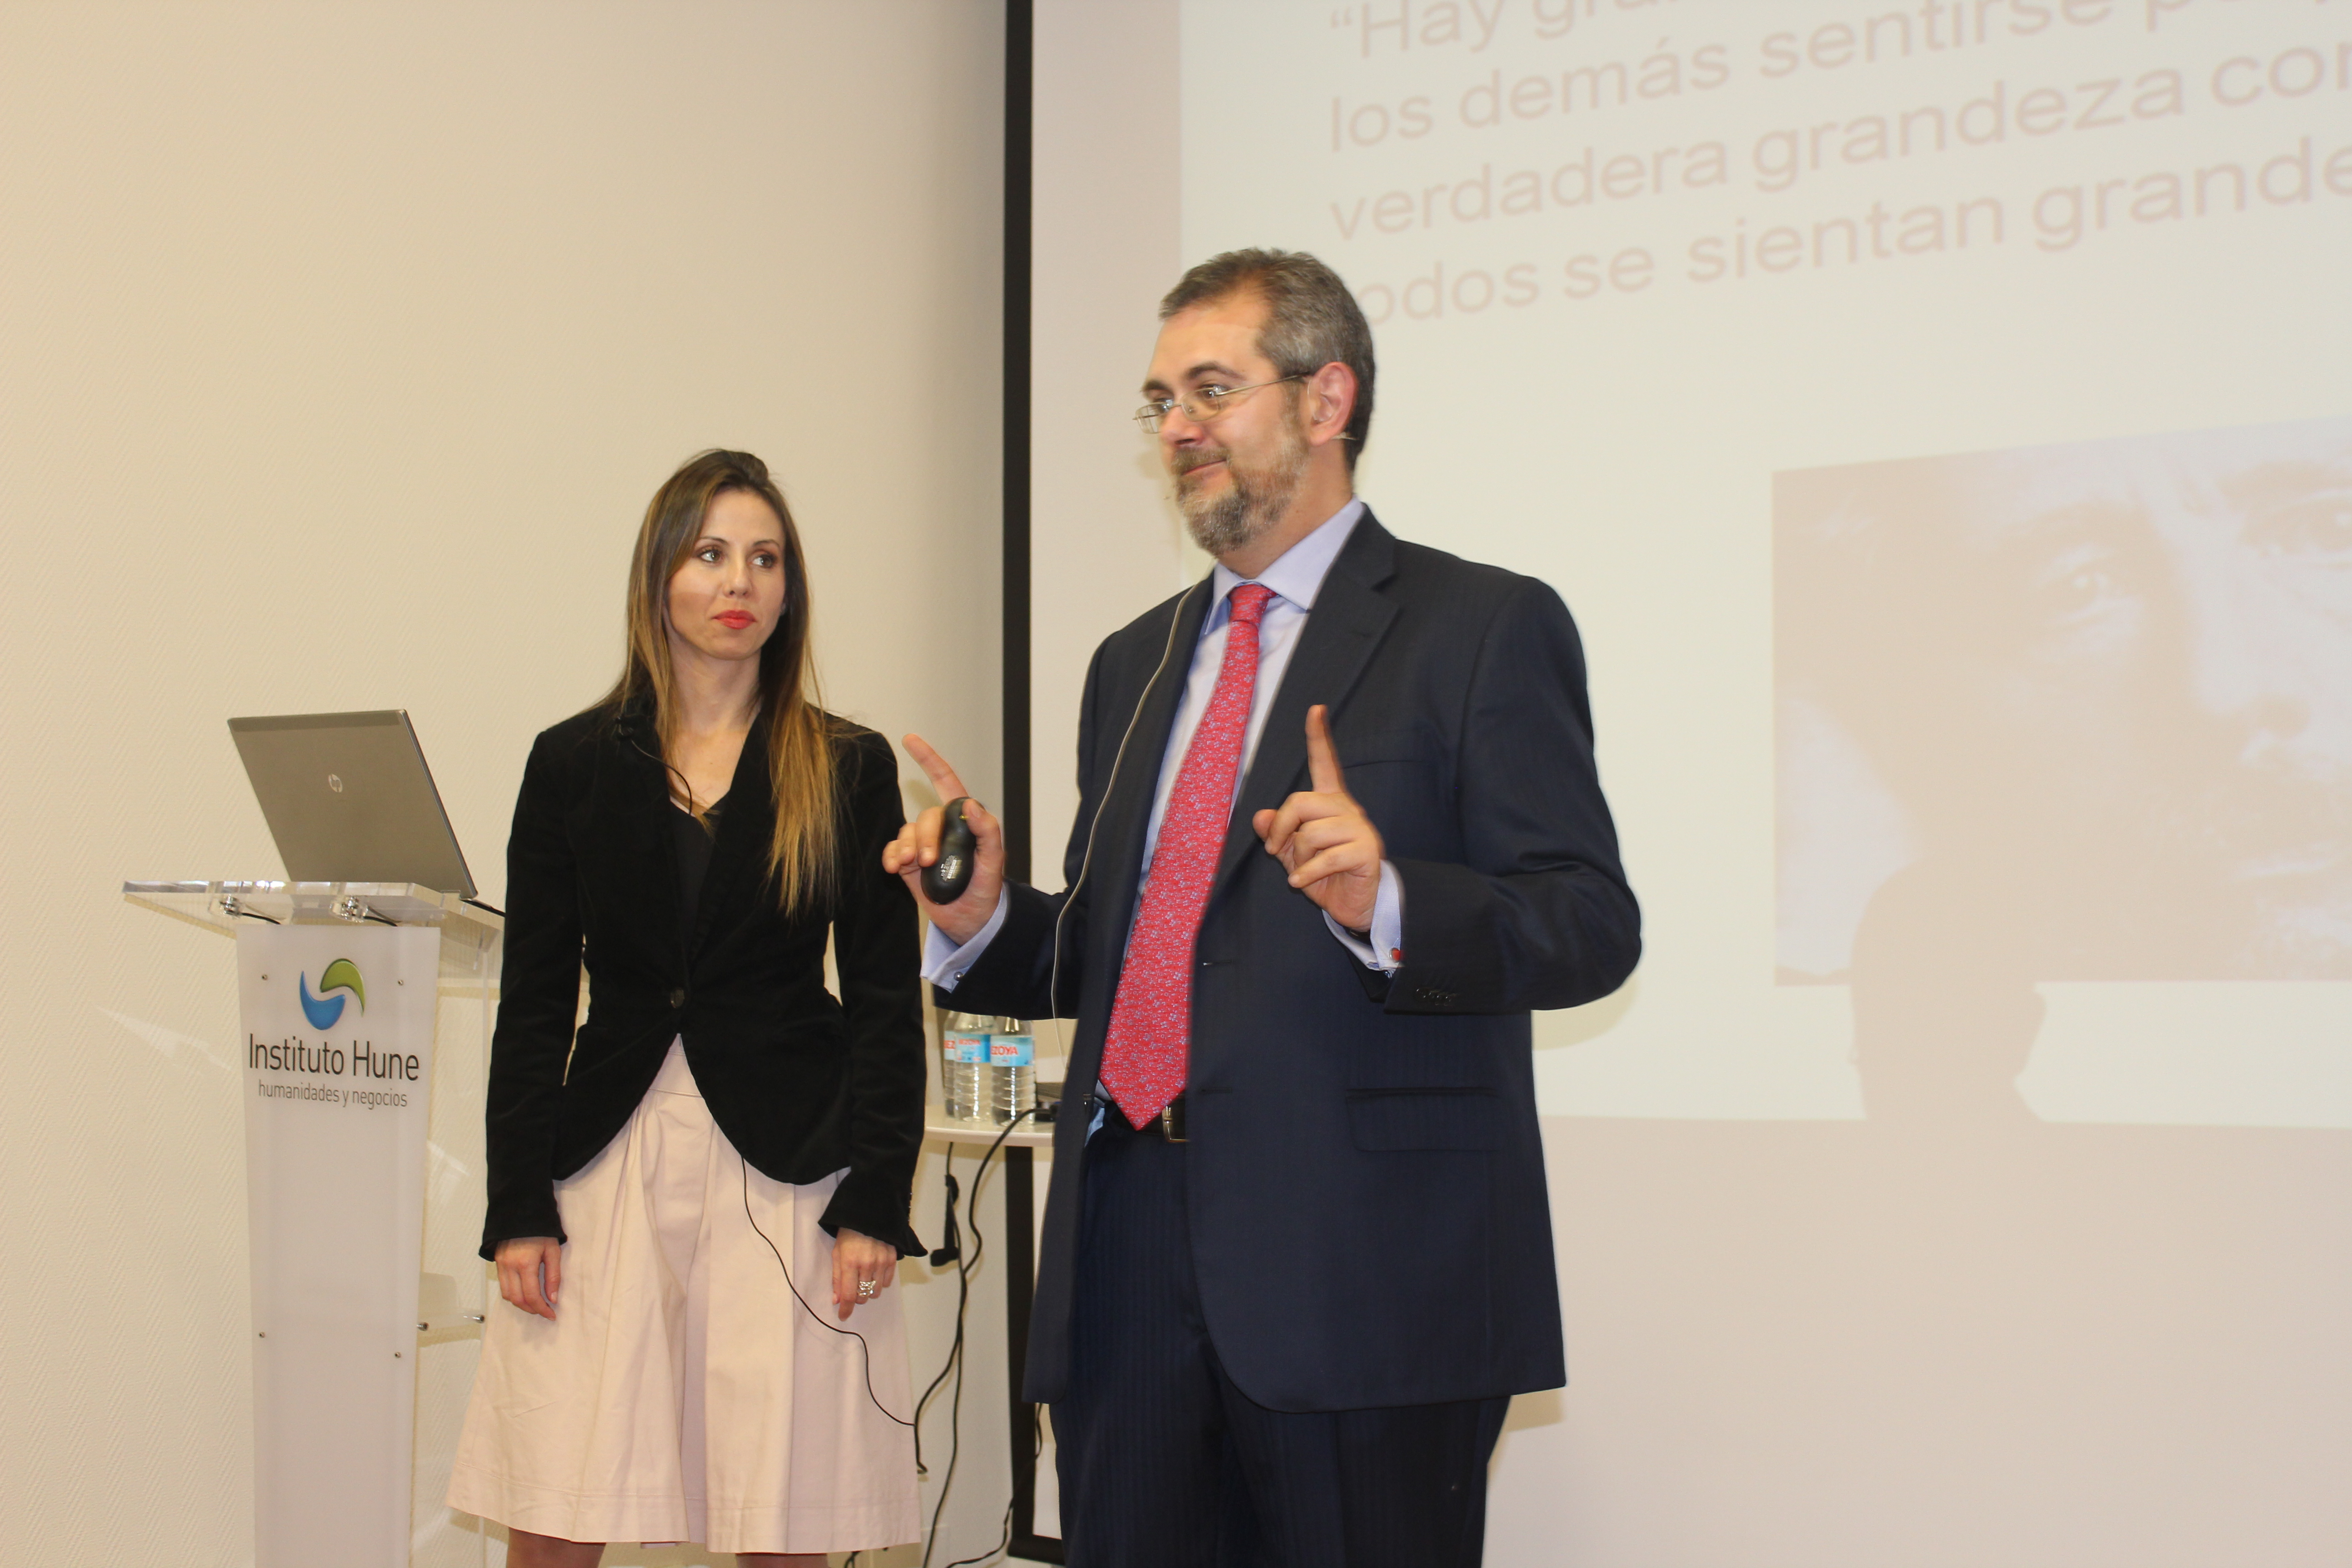 Los ponentes Francisco Misiego y Alexia de la Morena en el evento sobre Neuroliderazgo, Neuromotivación y Neuroeconomía.